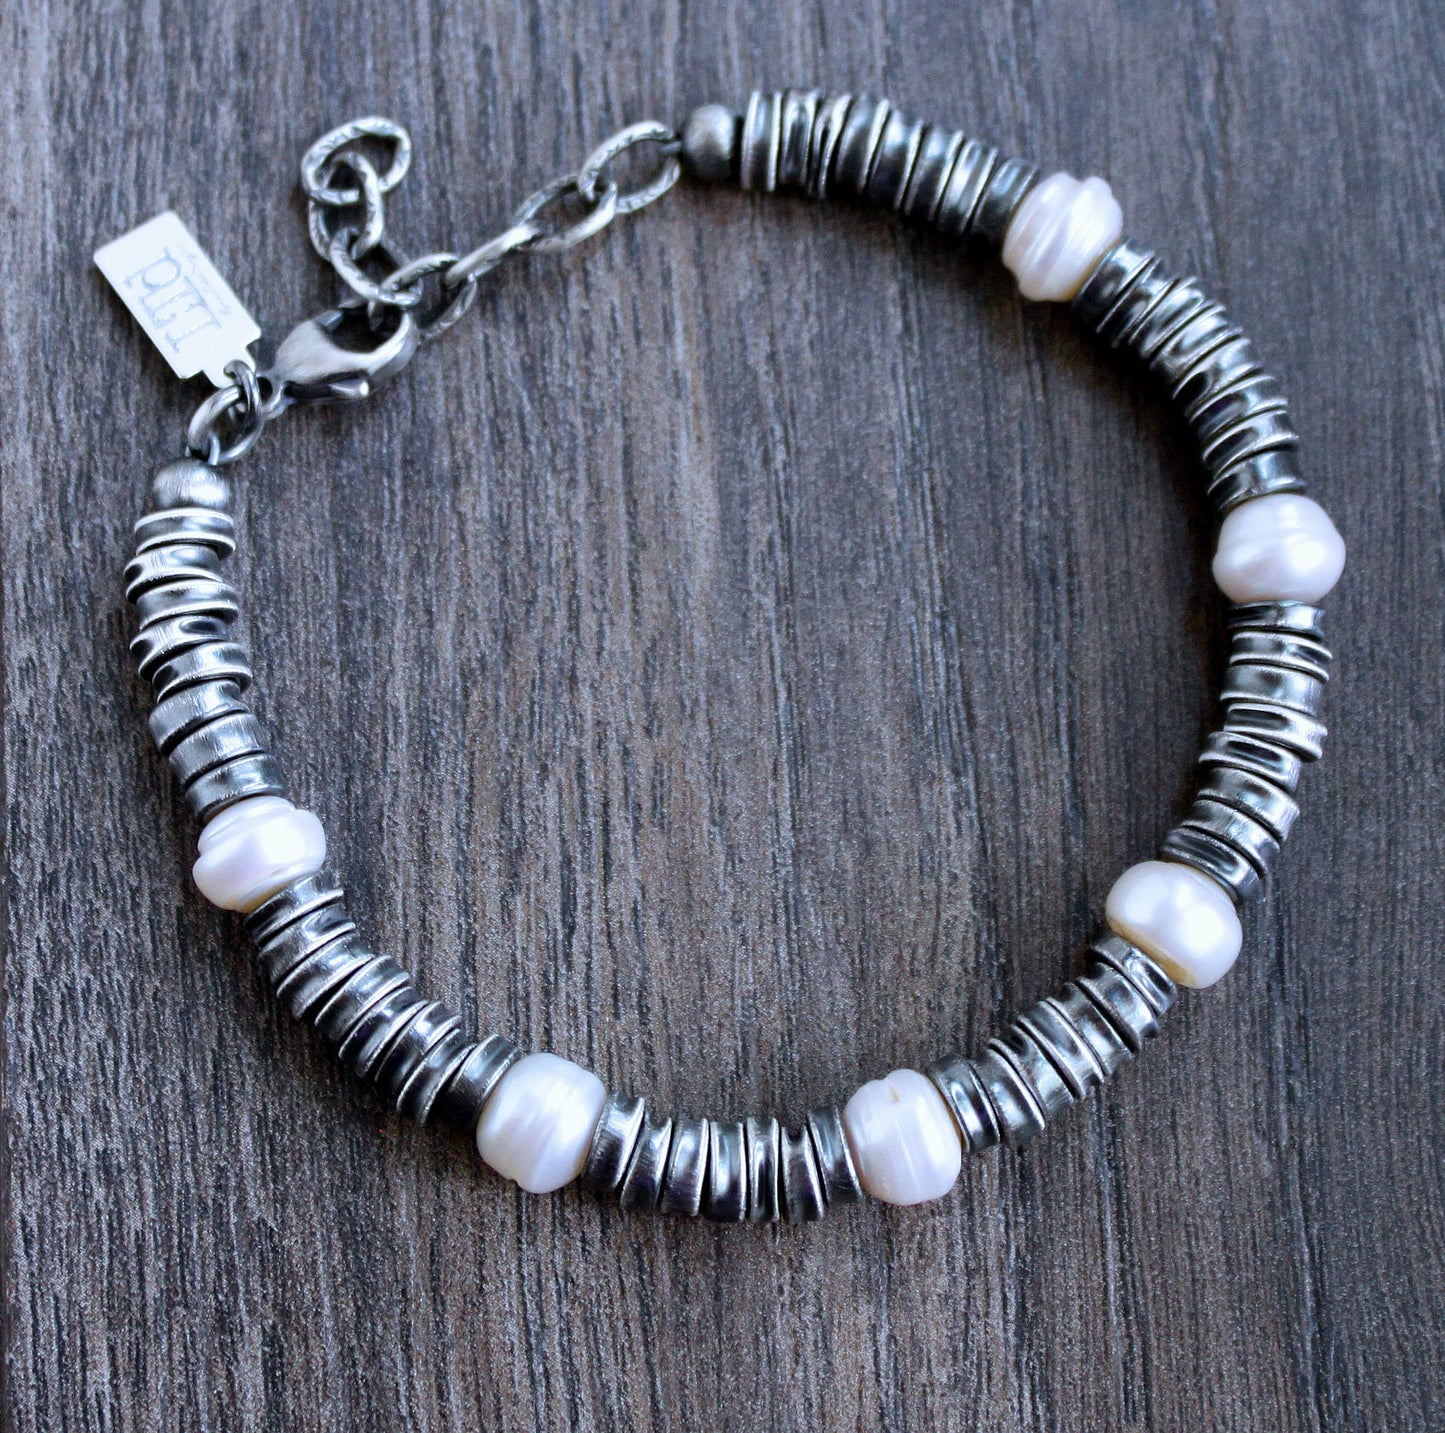 men's crushed sterling silver bead bracelet